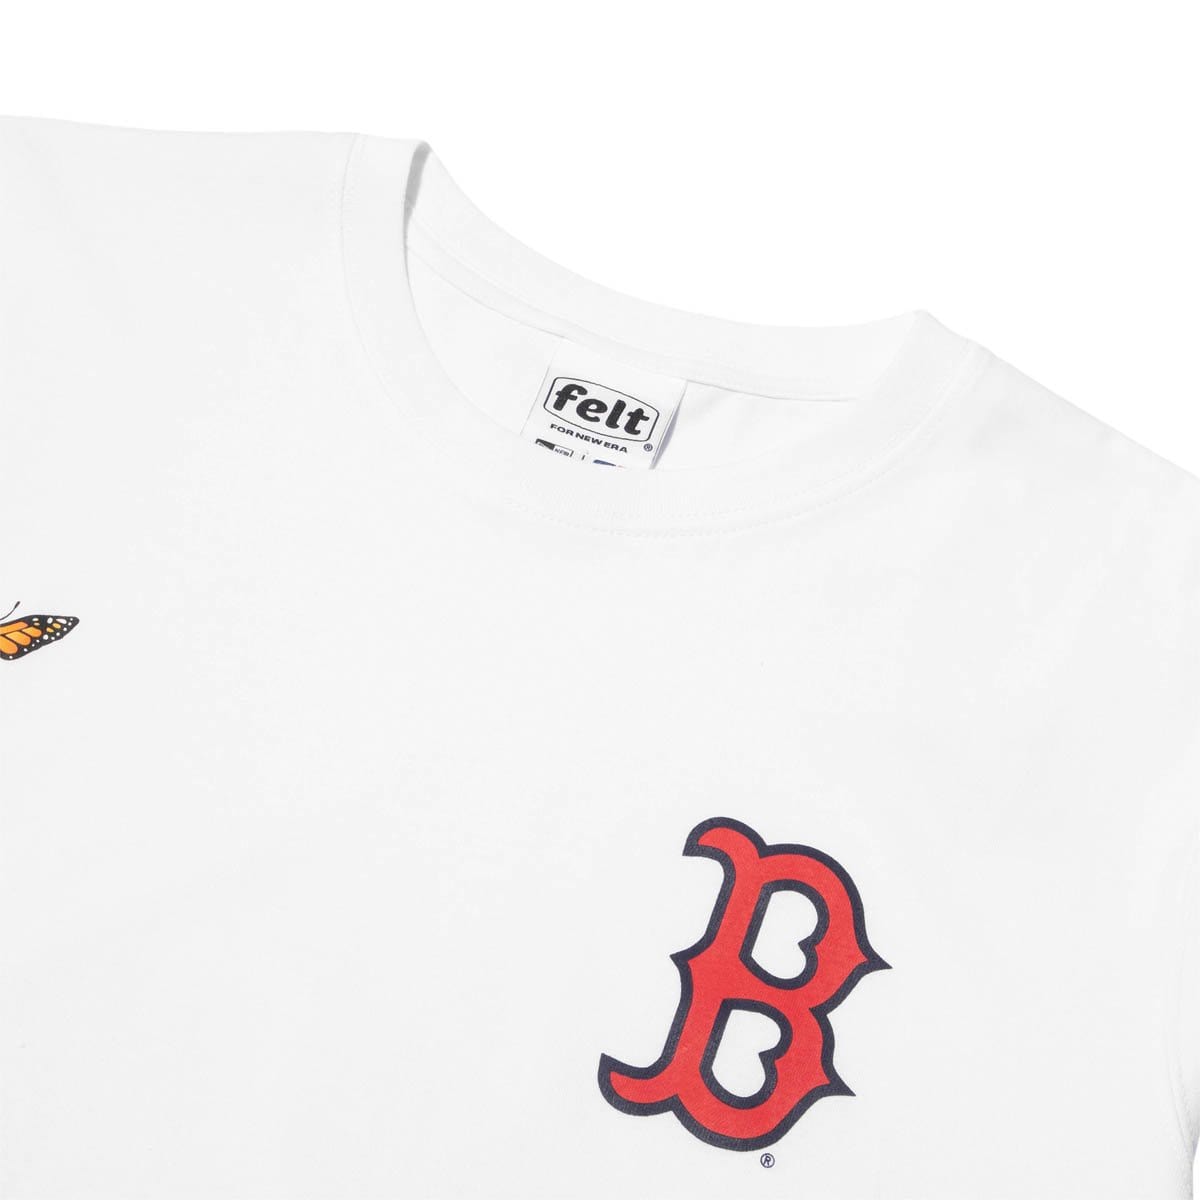 Men's New Era White Boston Red Sox Historical Championship T-Shirt